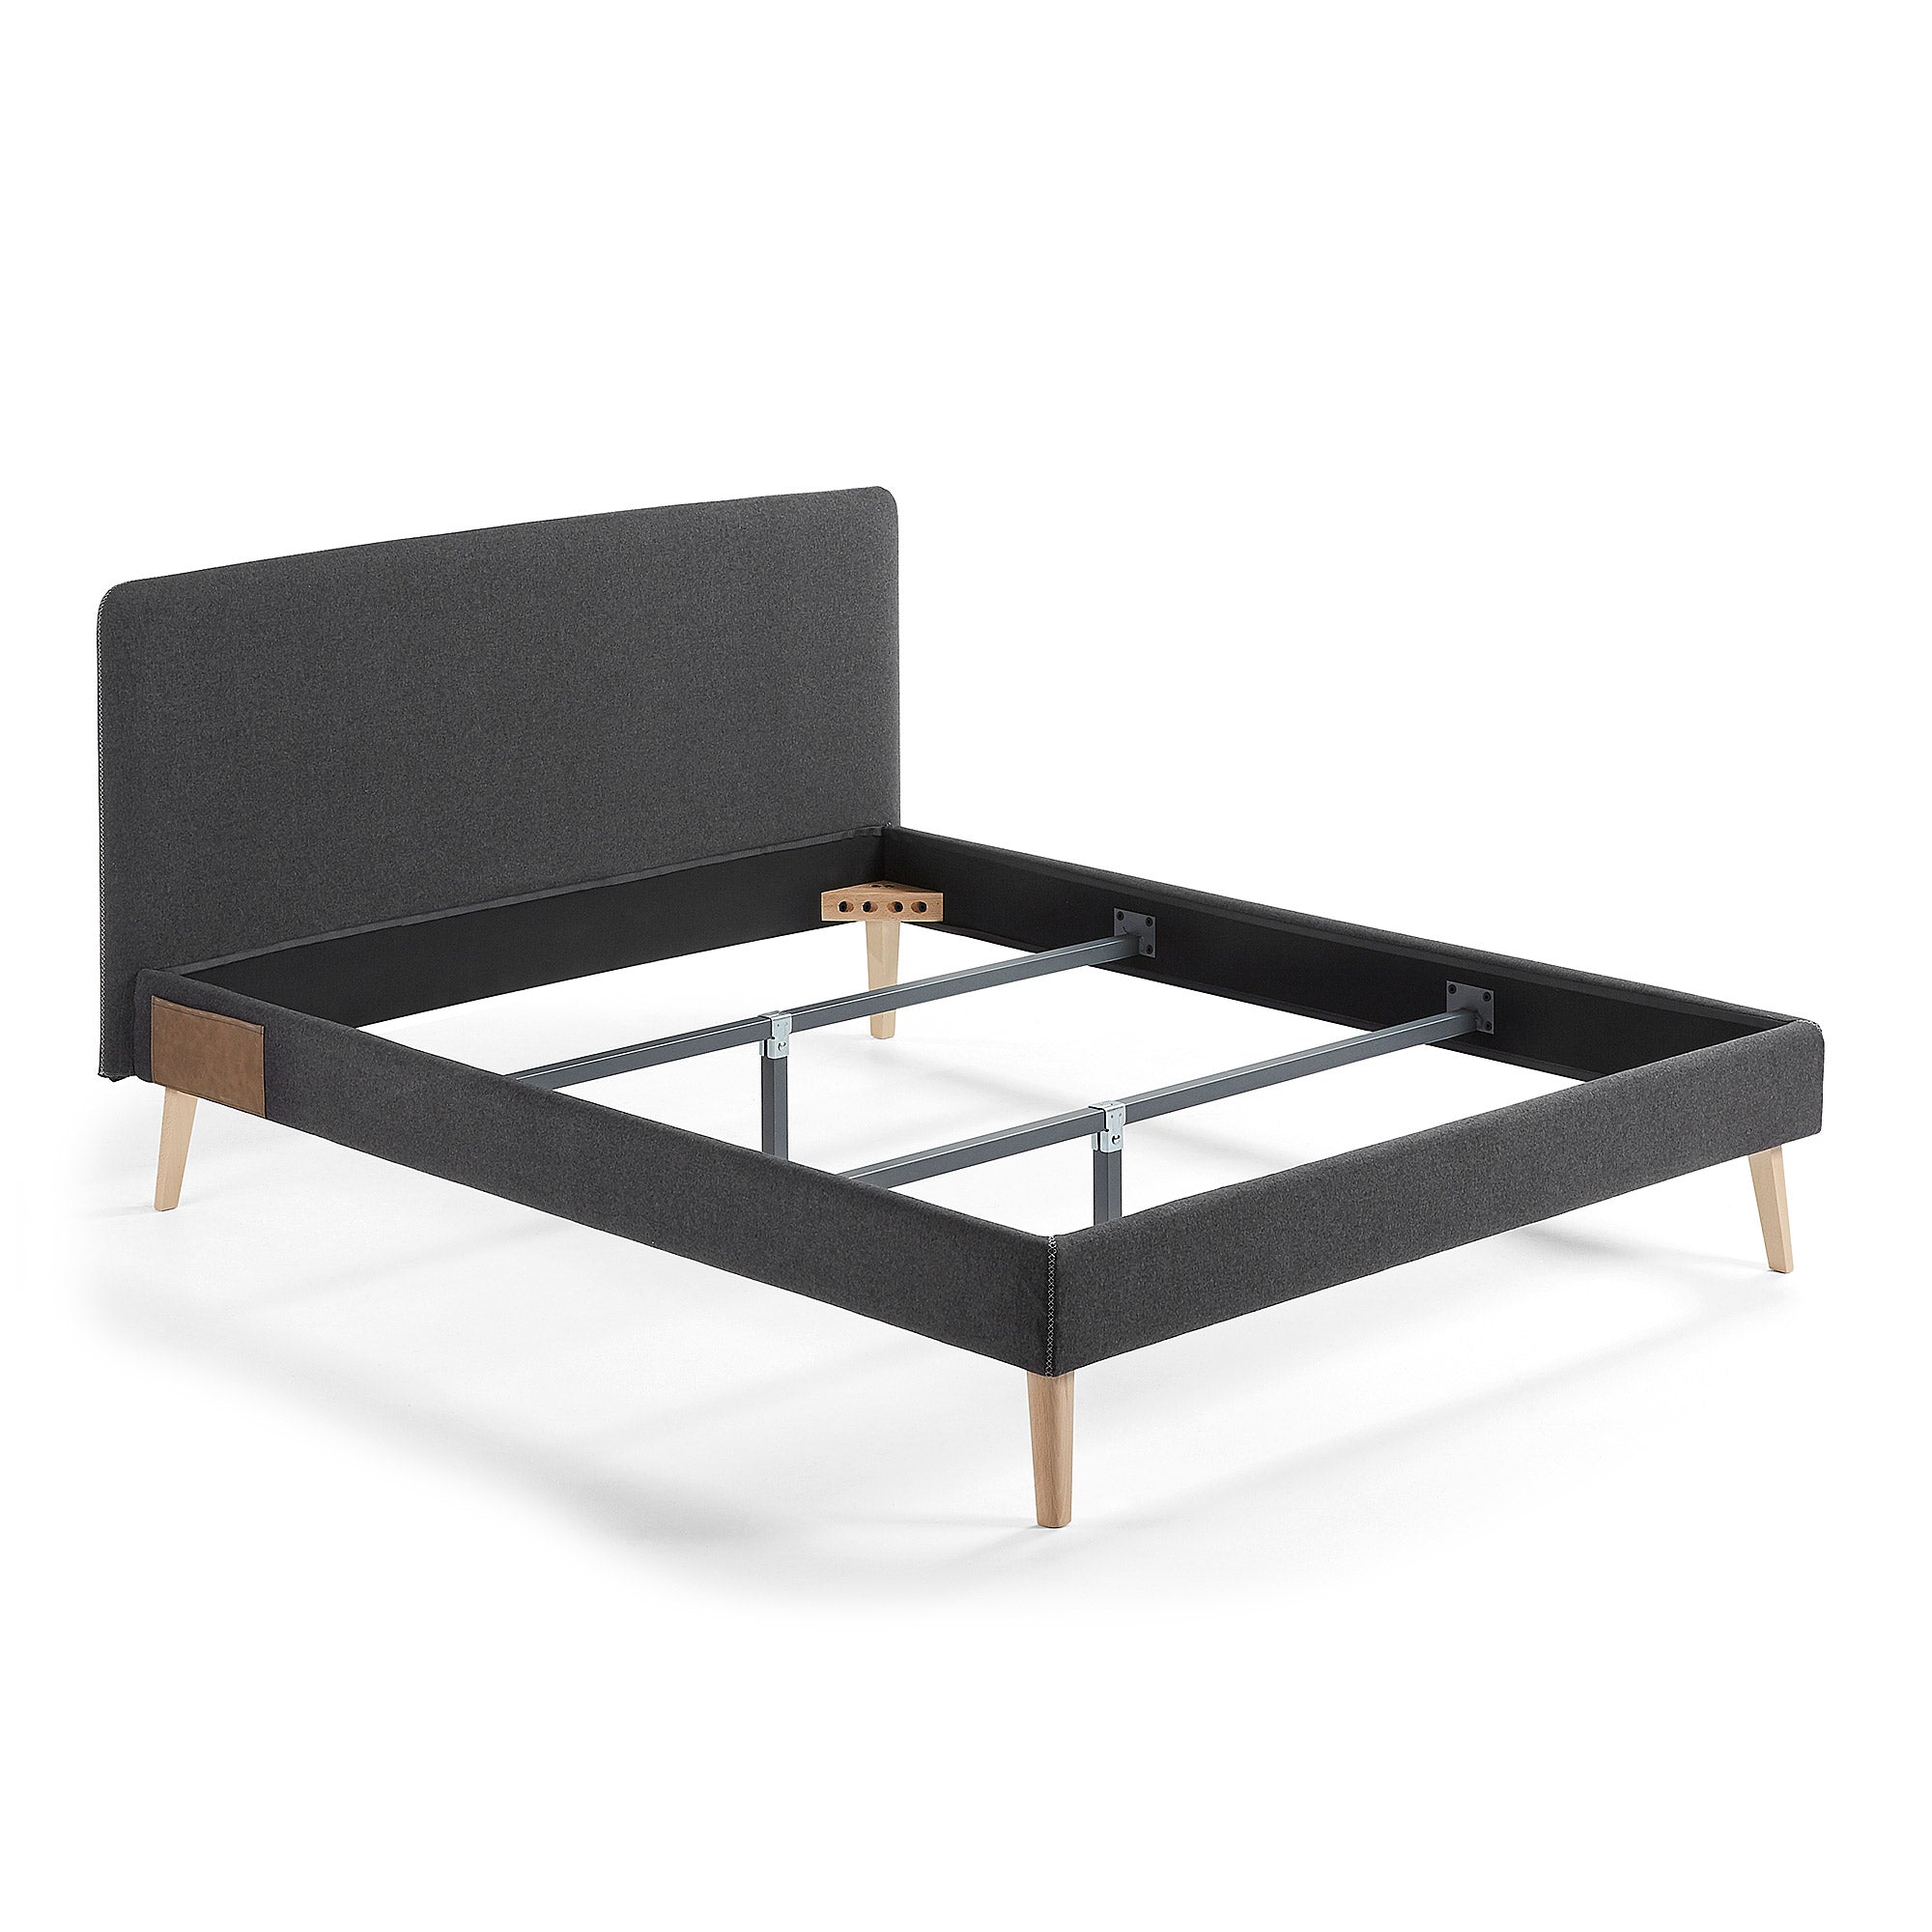 Dyla ágy levehető huzattal, fekete színben, tömör bükkfa lábakkal, 150 x 190 cm-es matrachoz